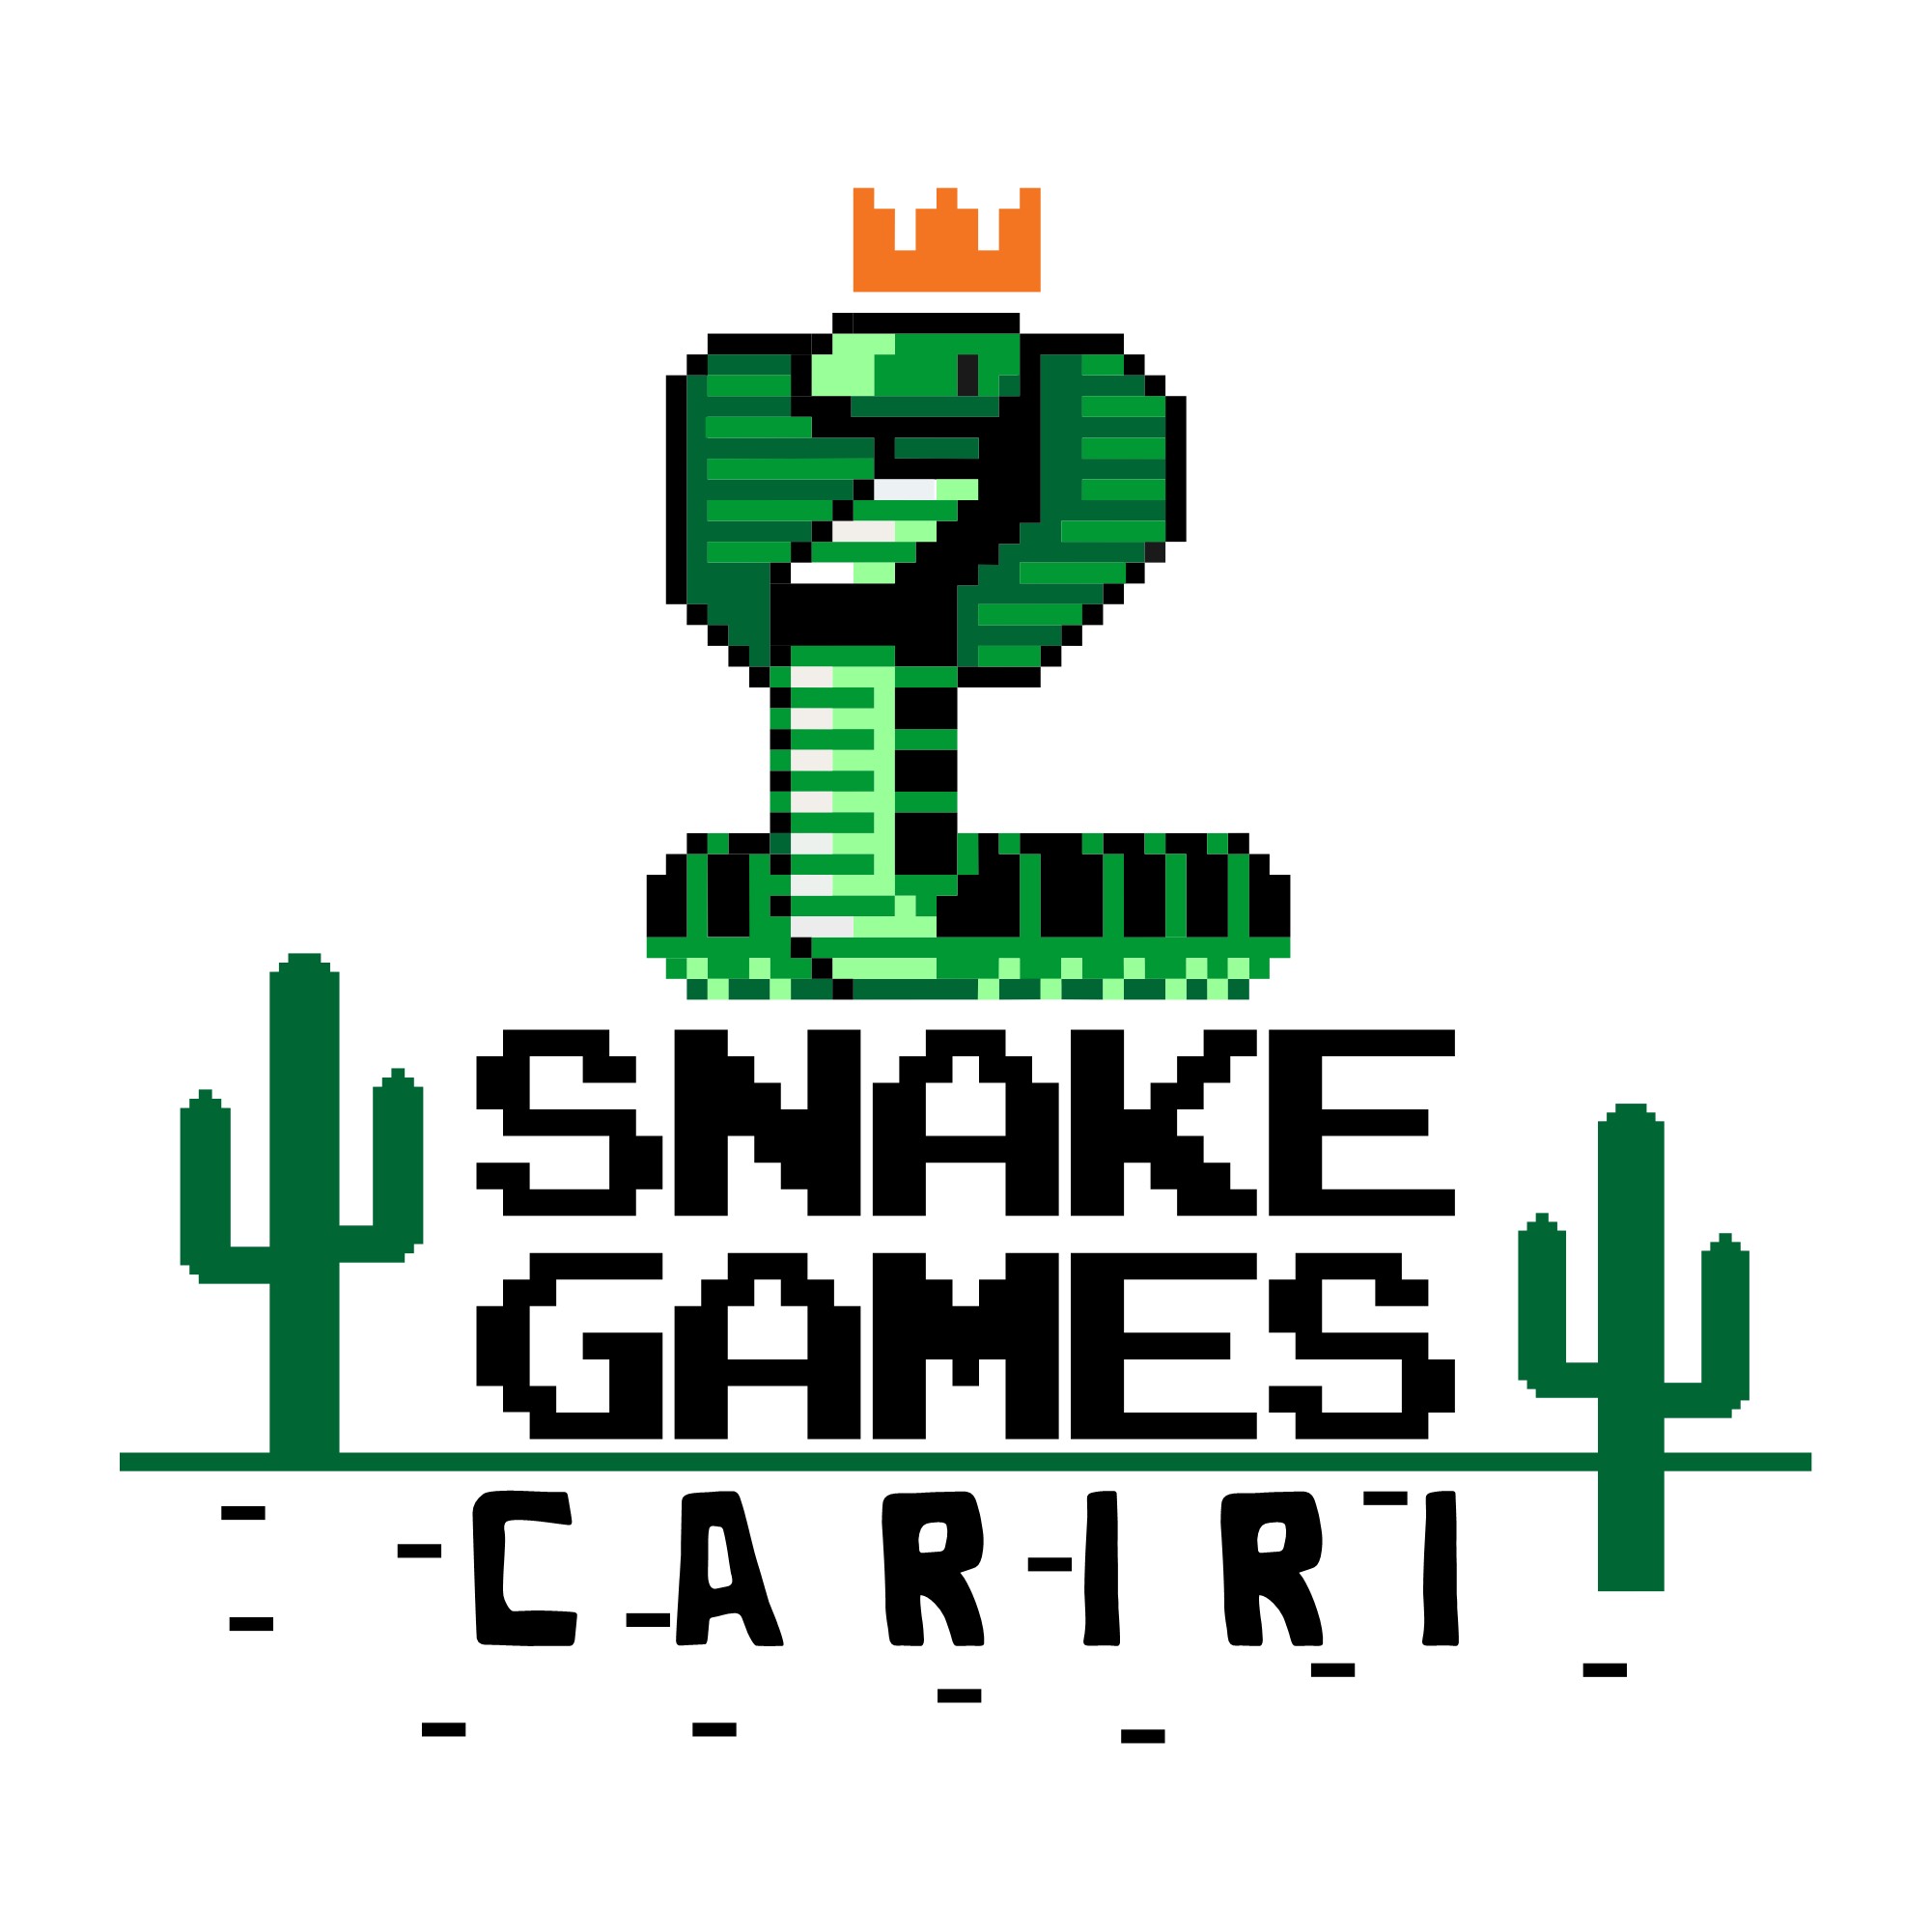 snake games